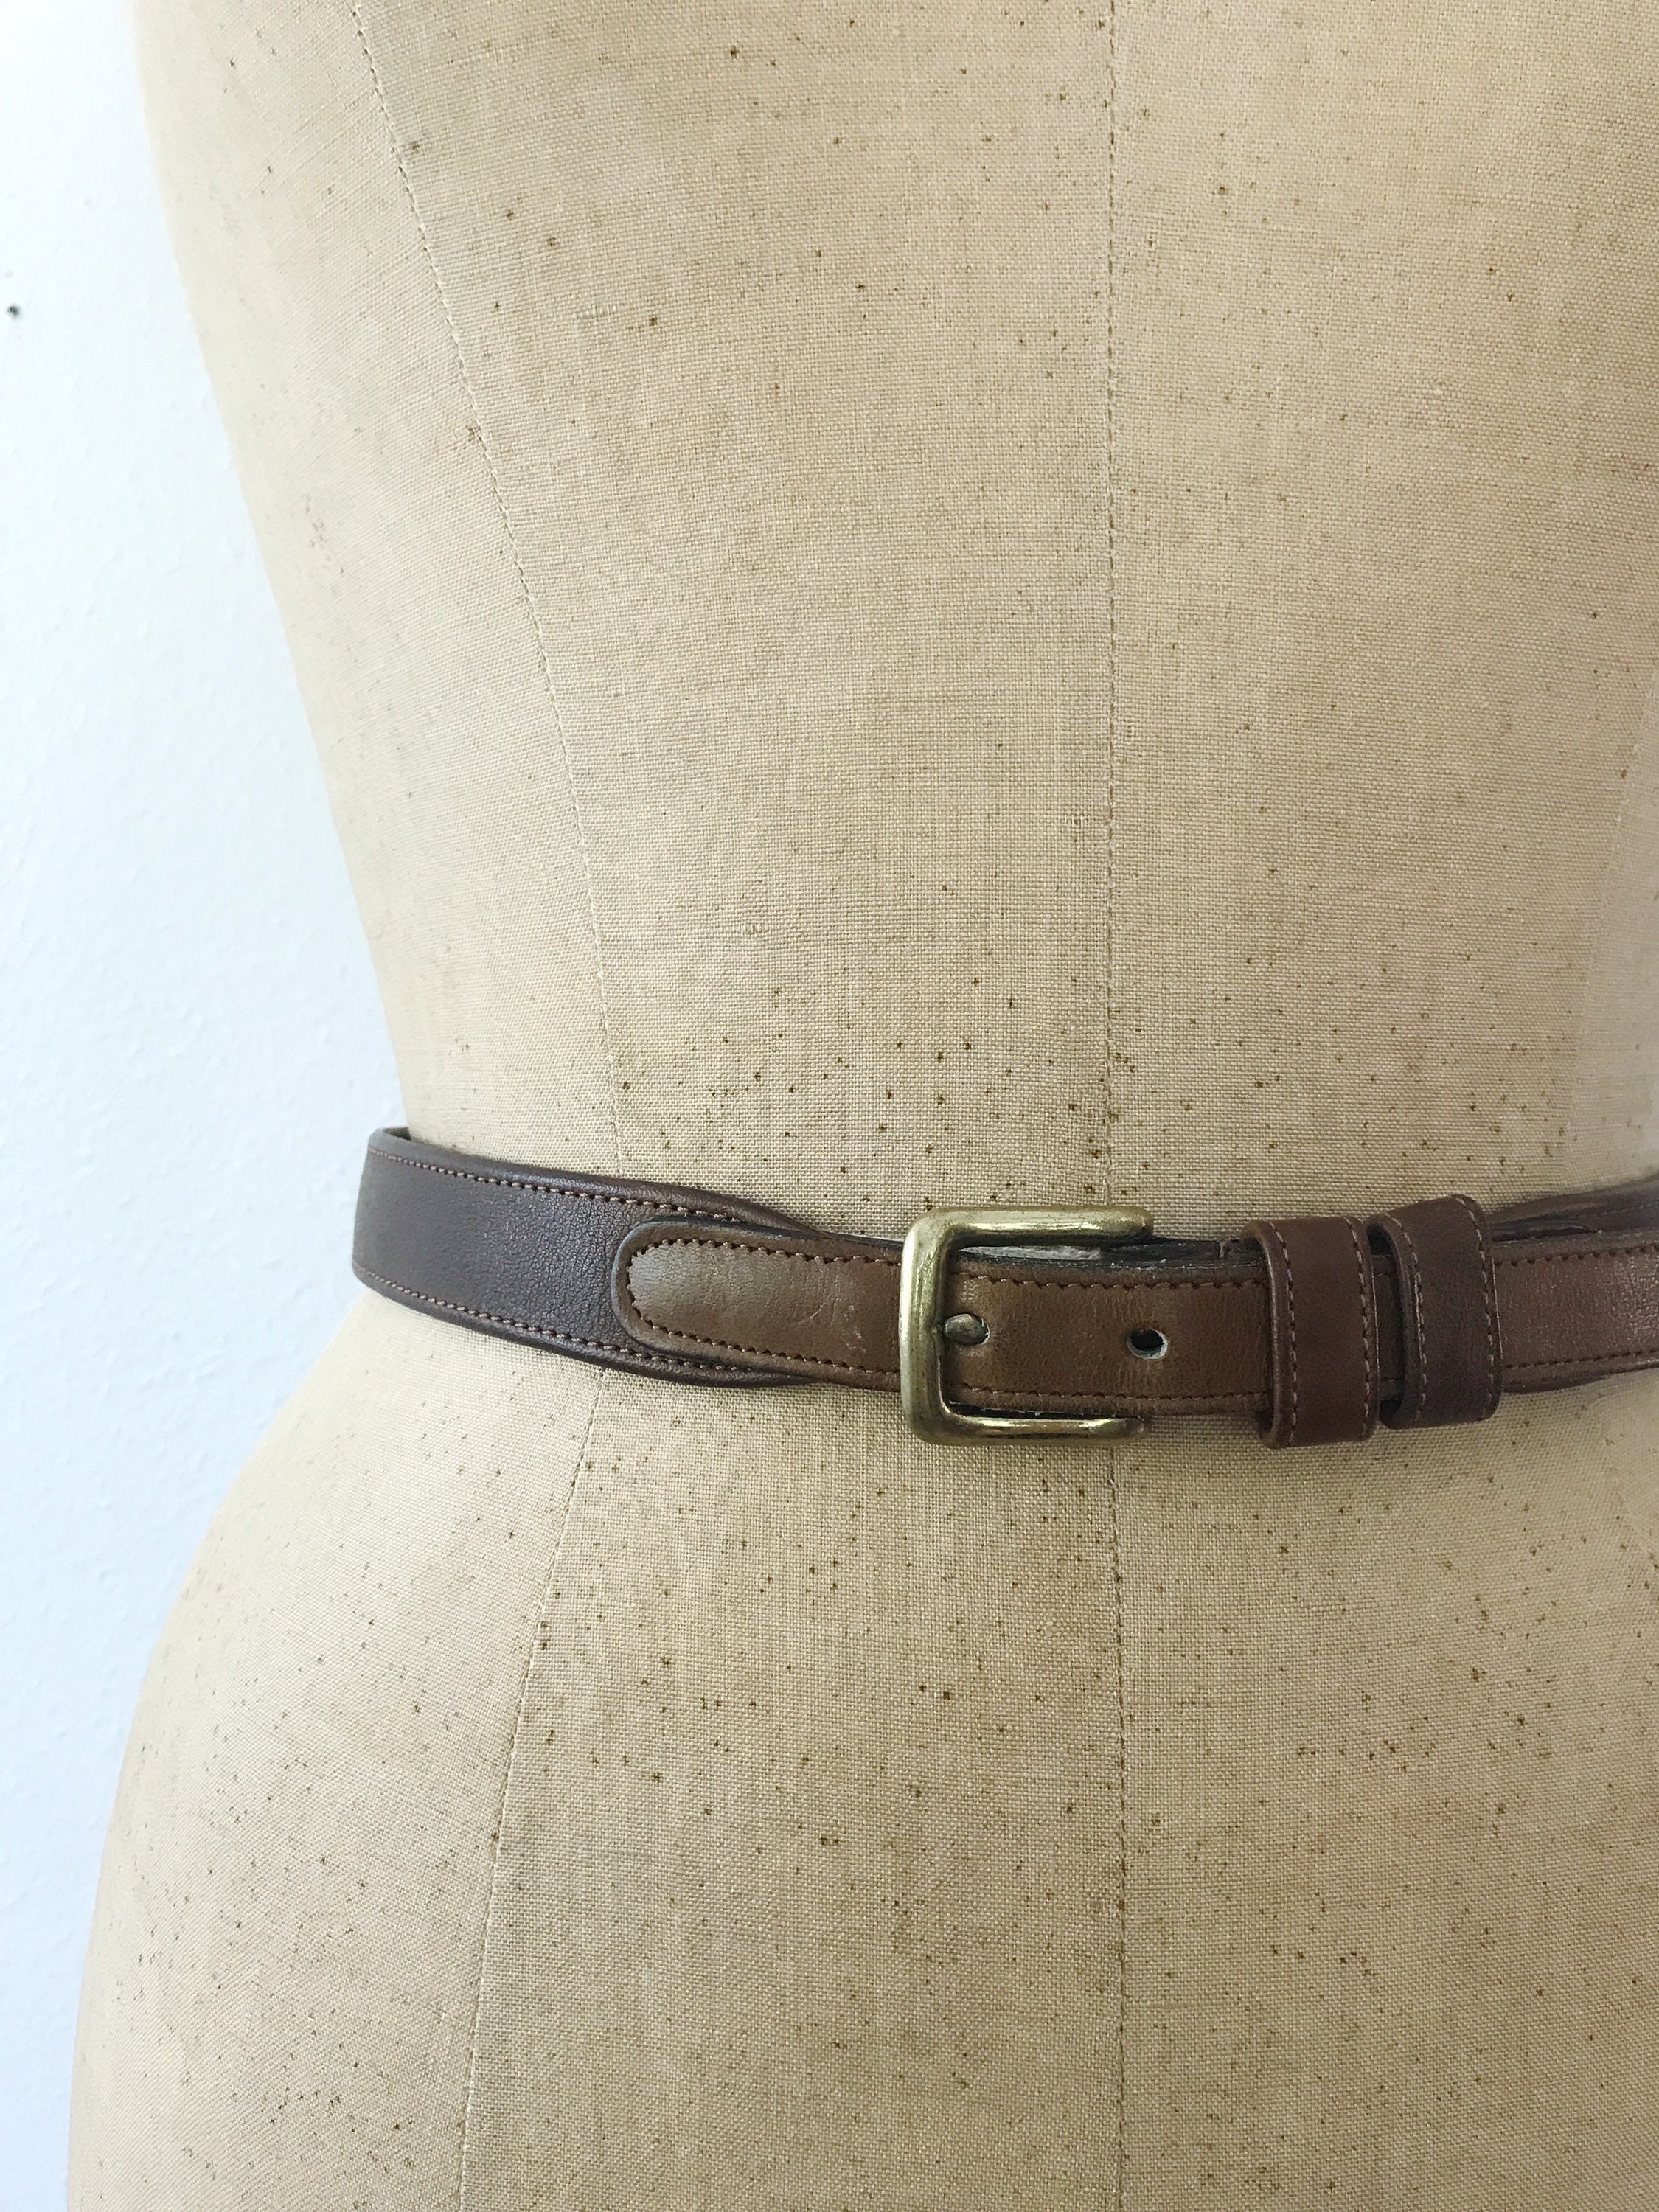 vintage leather belt / brown leather belt / Coach Saddle leather belt